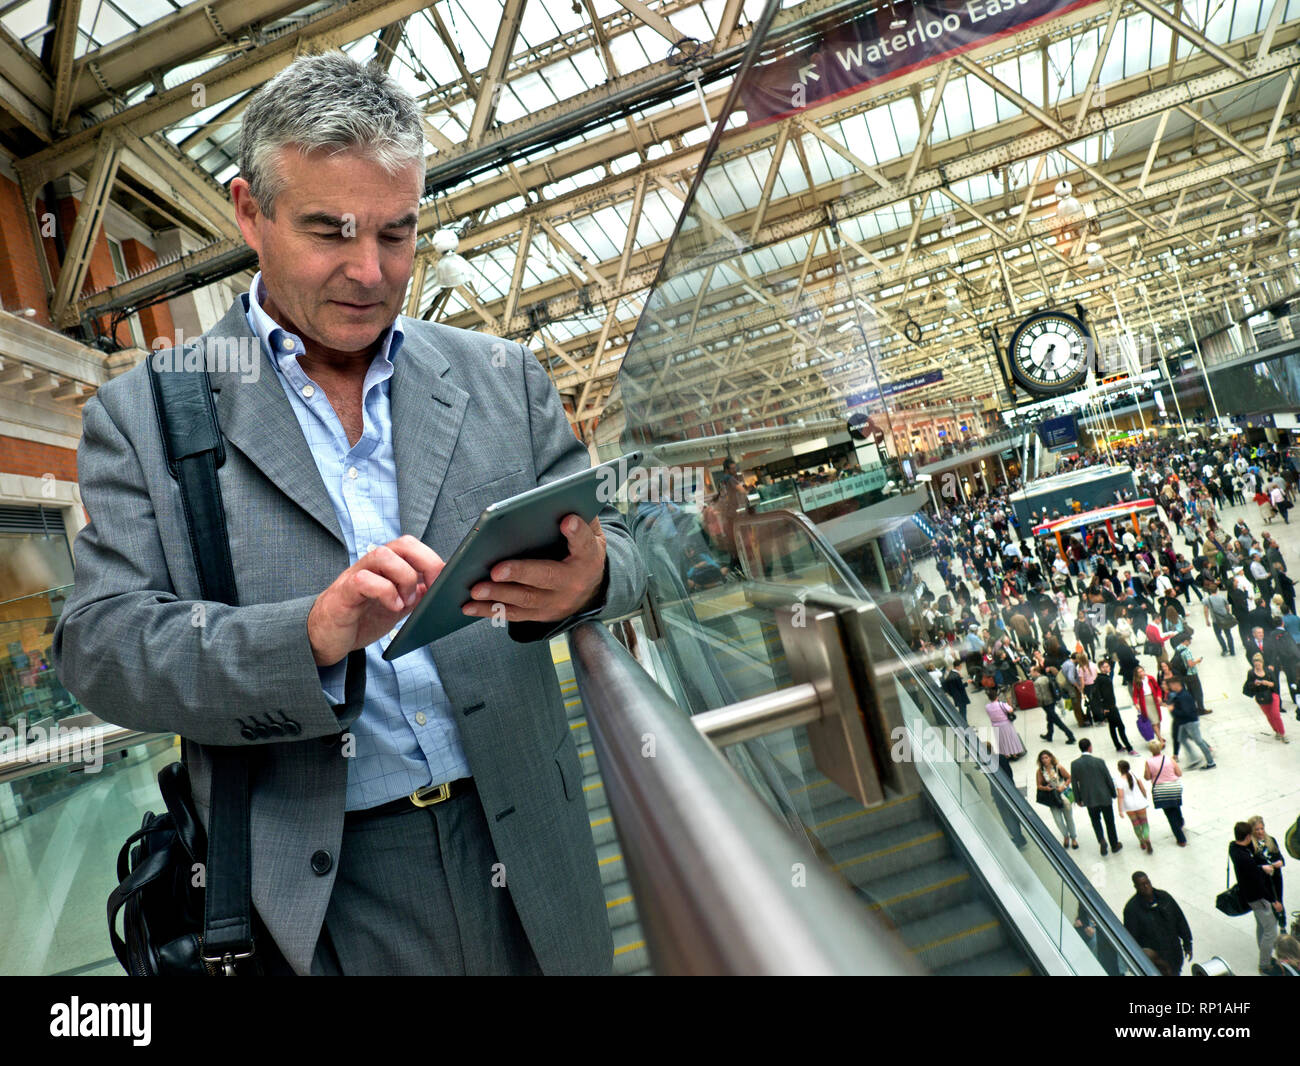 Stazione ferroviaria uomo collega tablet iPad maturo uomo d'affari in tuta su occupato pendolari London Waterloo Station concourse ferroviario, utilizzando il suo iPad tablet computer 'in movimento' con pendolari e Waterloo Station Clock dietro Foto Stock